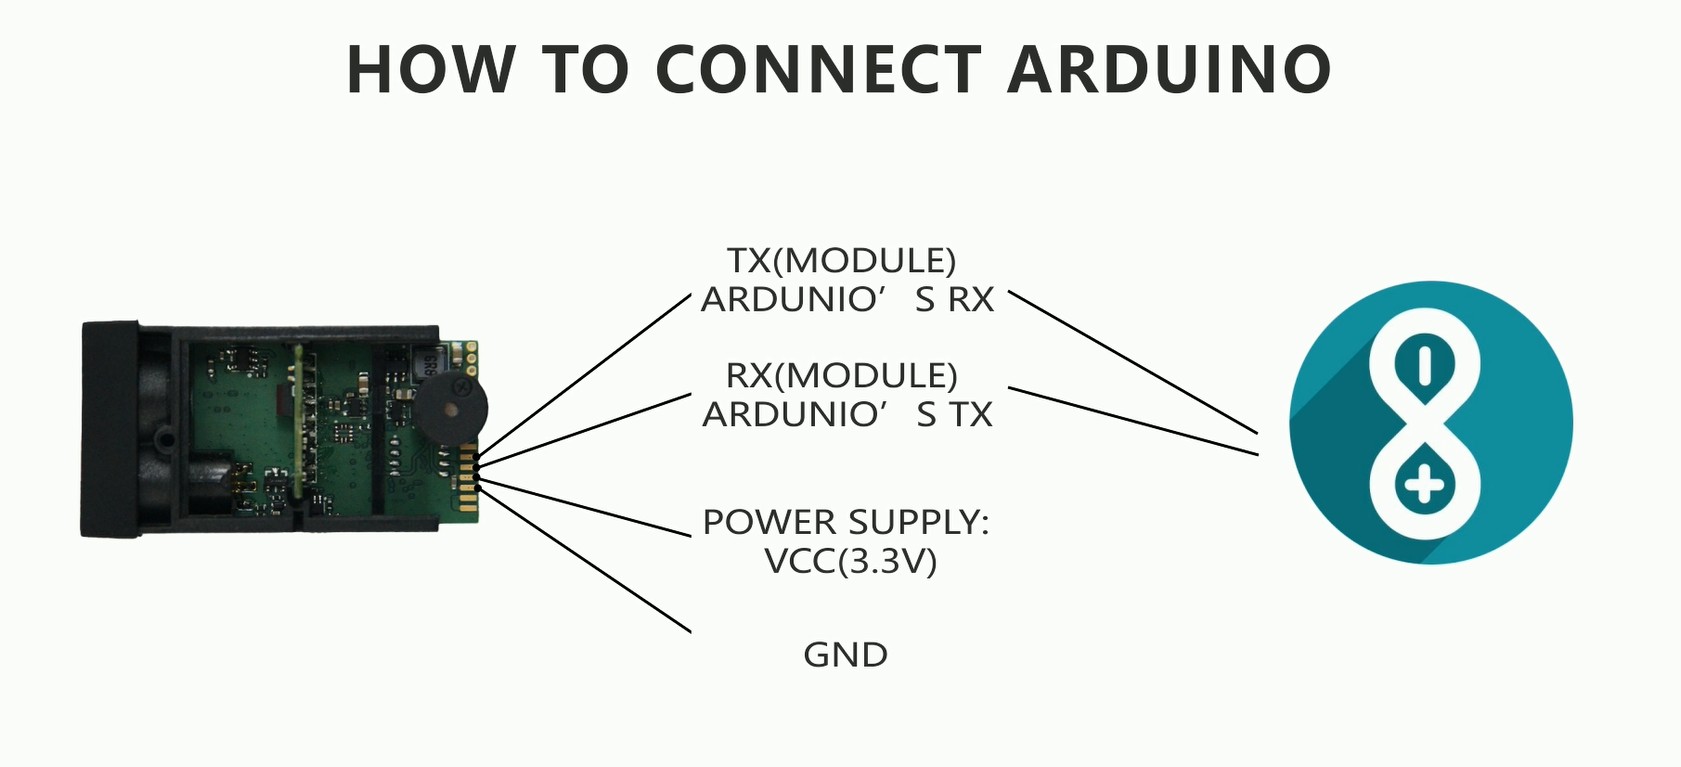 50 मीटर USB दूरी माप सेंसर के साथ Arduino को कैसे कनेक्ट करें